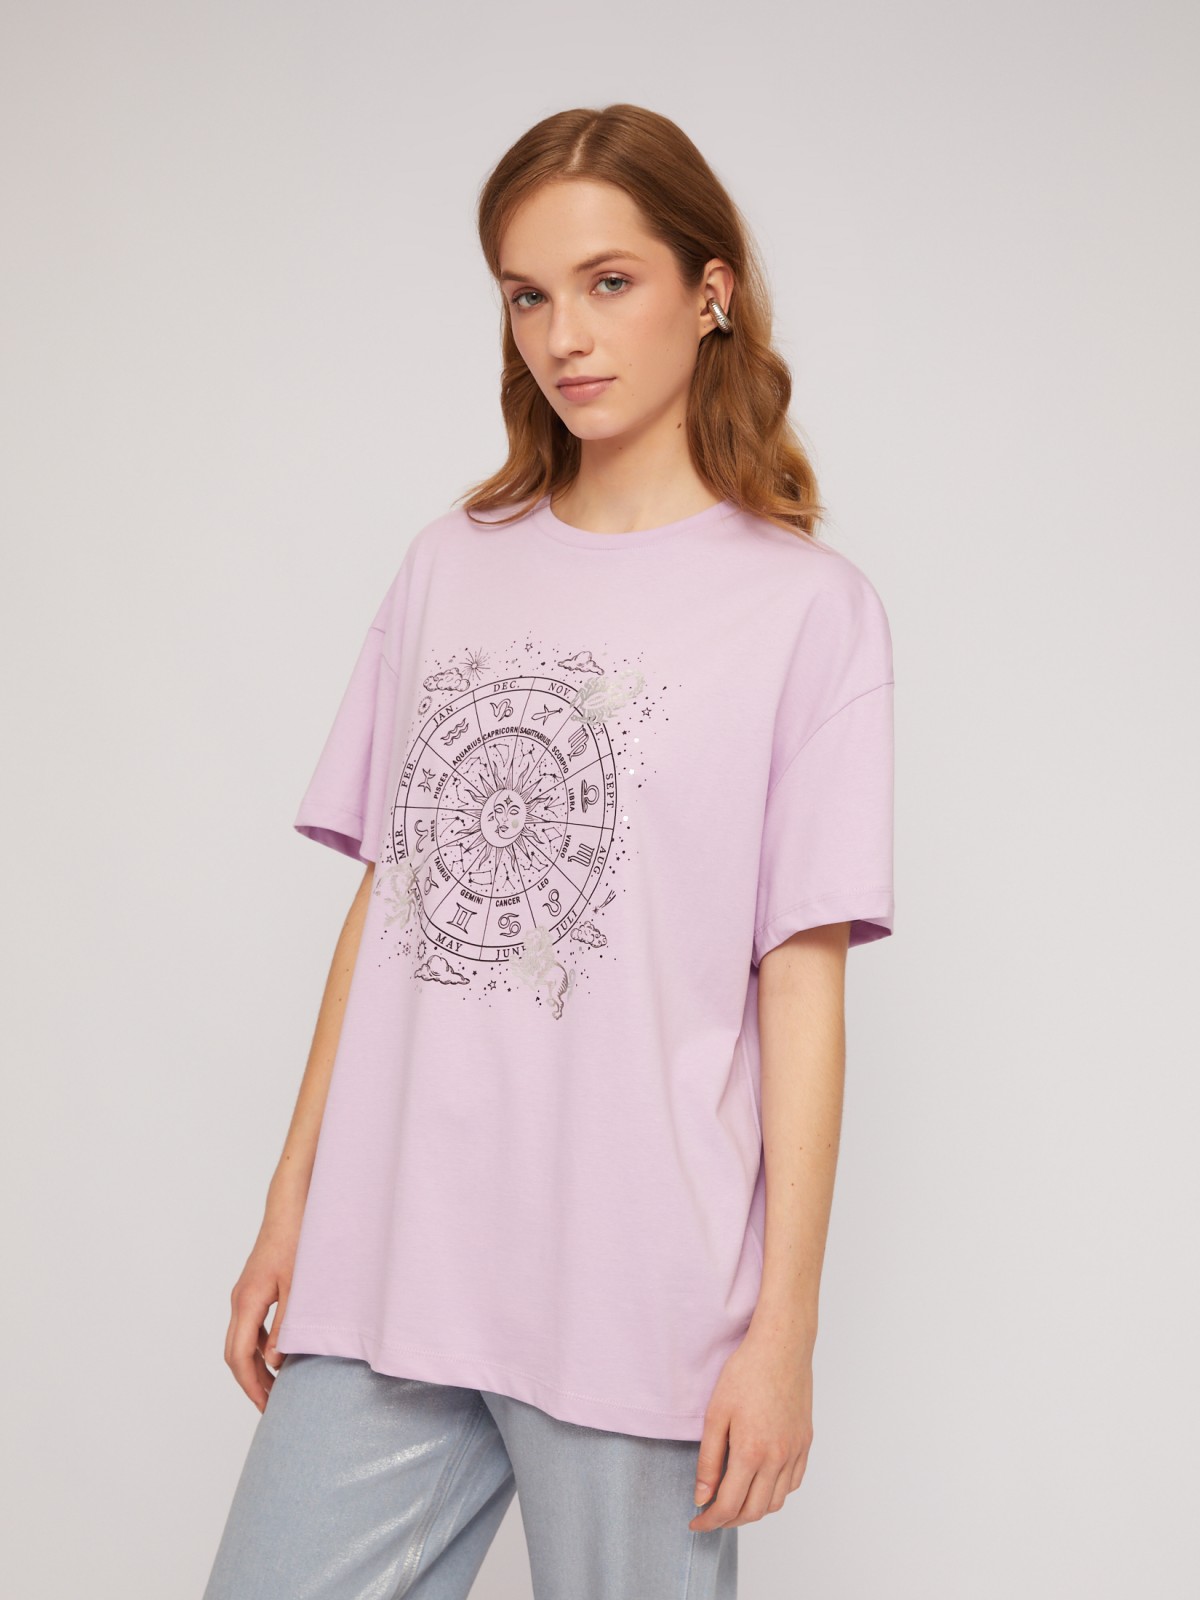 Трикотажная футболка из хлопка с принтом zolla N2424320W183, цвет лиловый, размер XS - фото 3